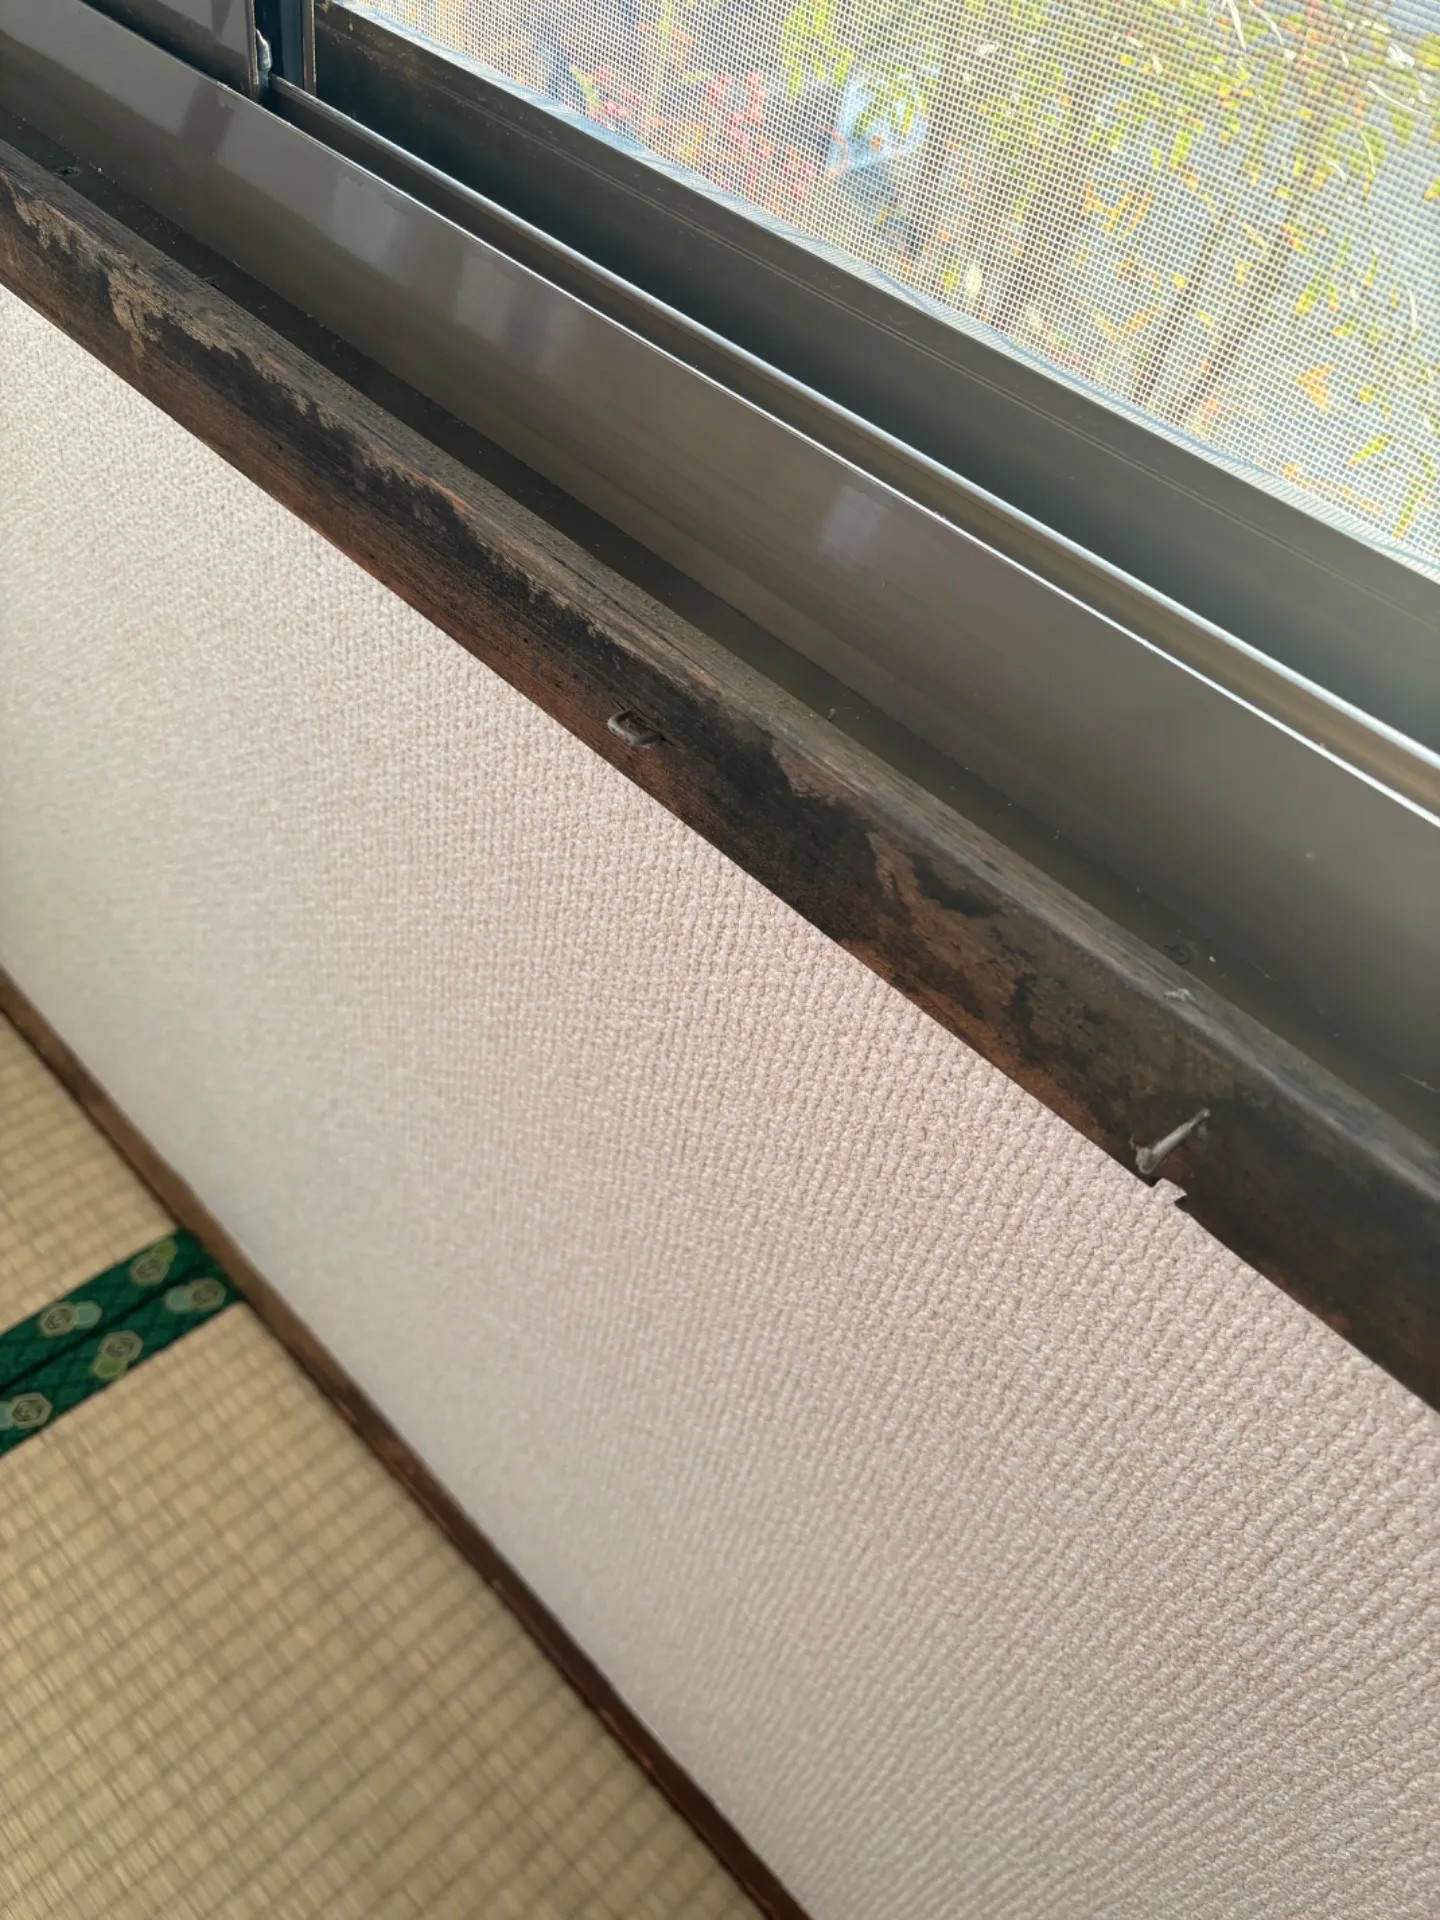 下関市の天井・壁カビ取り業者 - カビバスターズ福岡によるMIST工法®で家族を守る